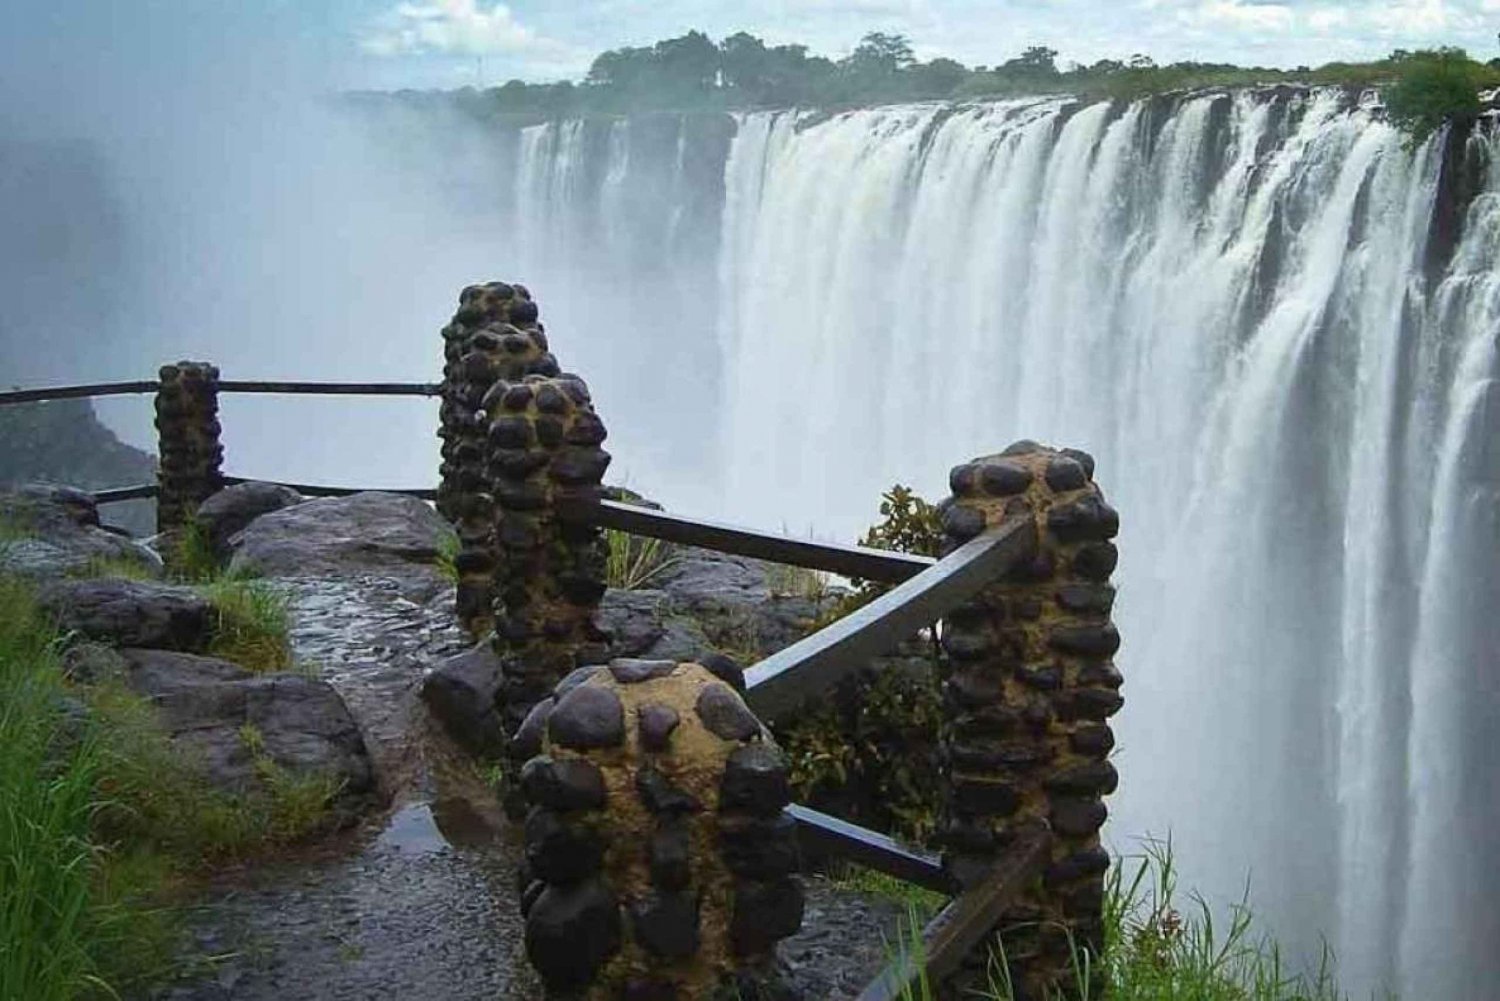 Victoria Falls Guided Tour on Boths Sides: Zimbabwe & Zambia